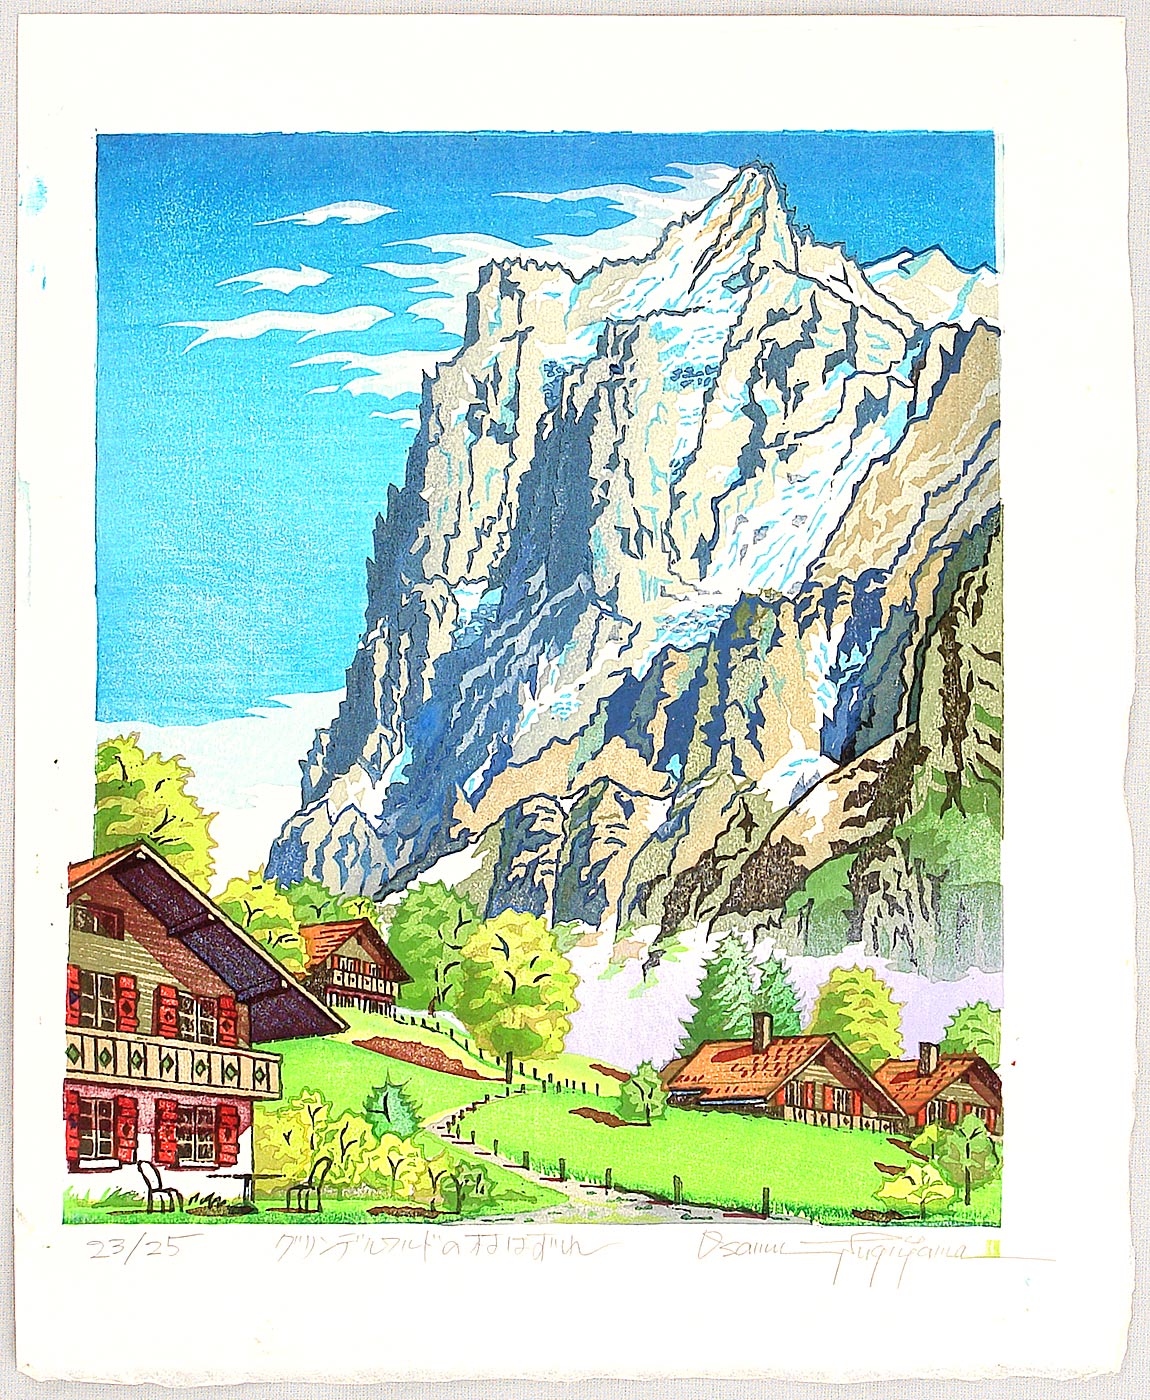 両角修: Near Grindelwald Village - Switzerland - Artelino - 浮世絵検索